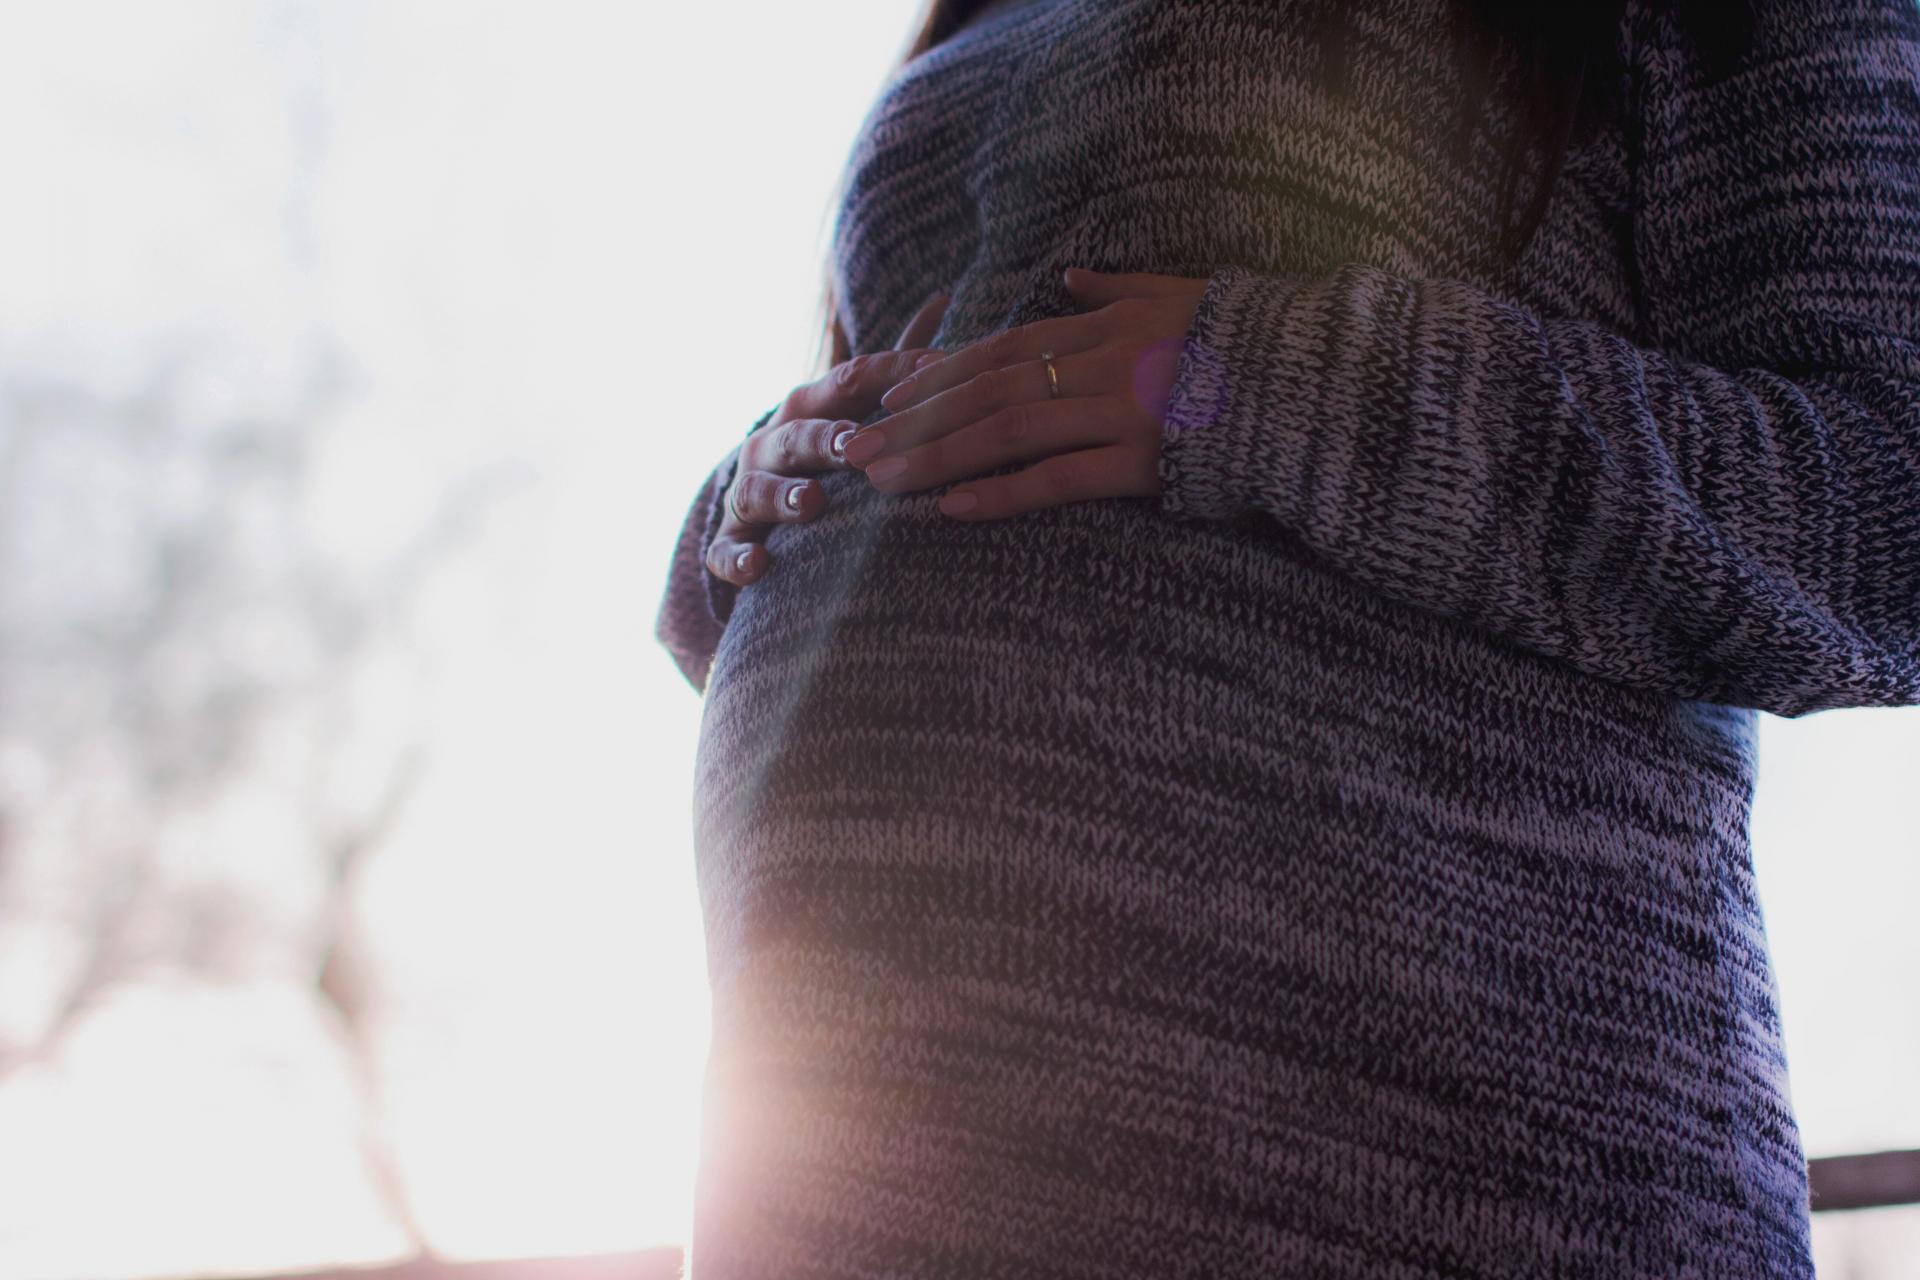 Tehotenstvo môže urýchliť biologické starnutie, ukázala štúdia